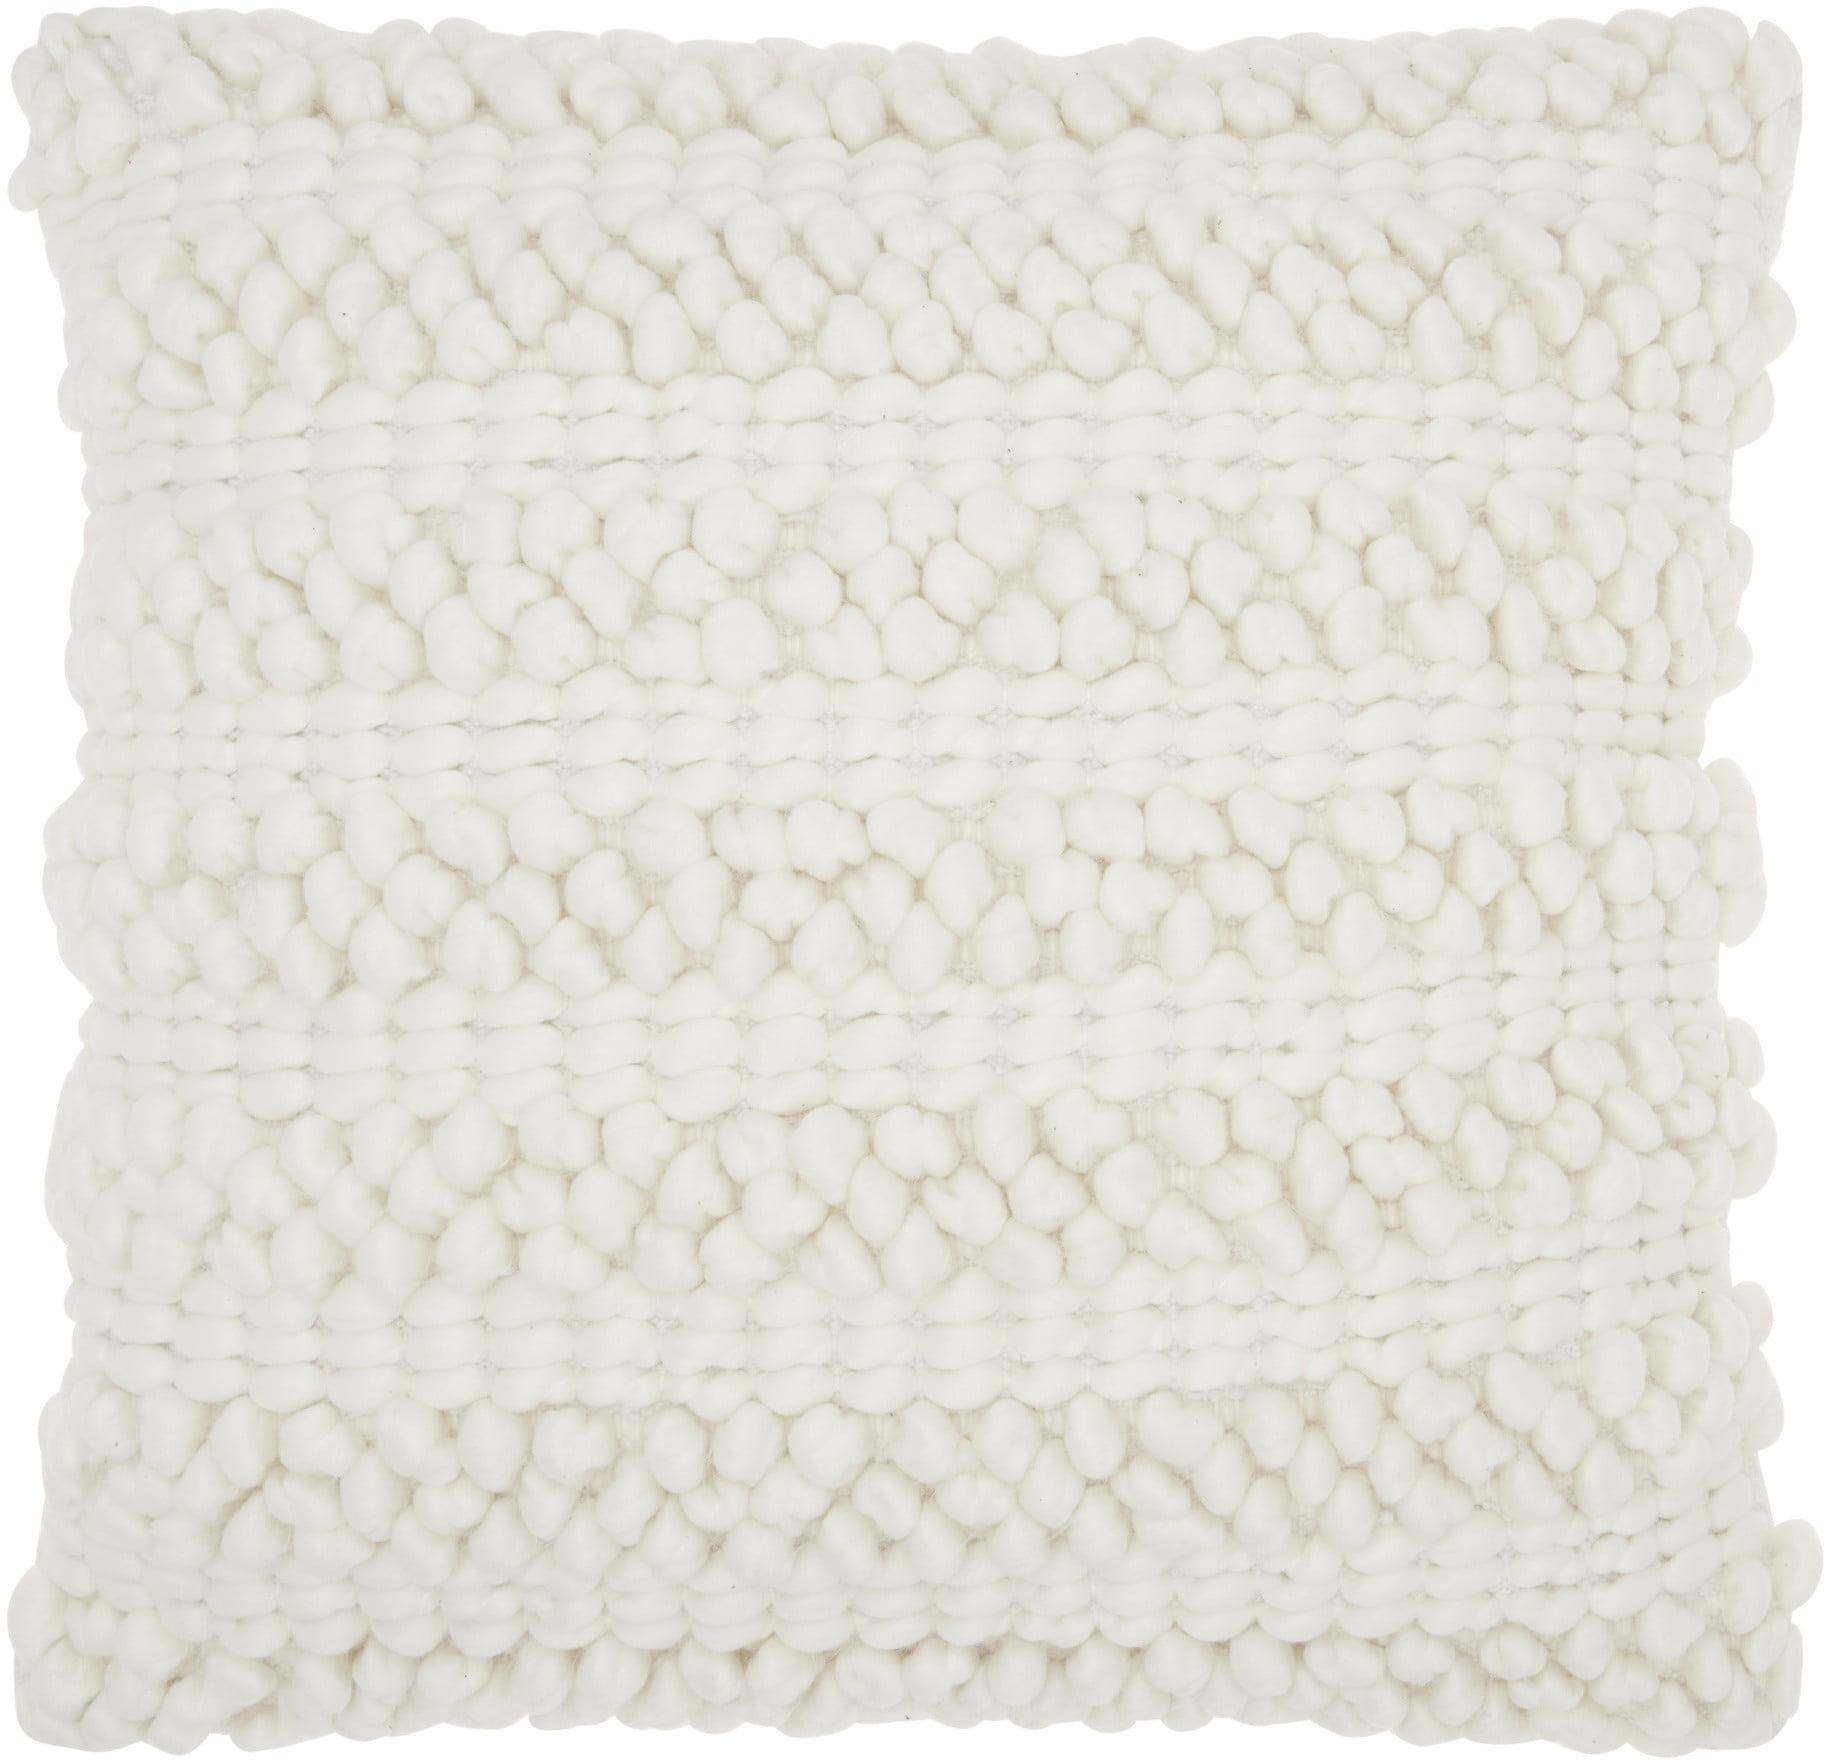 Woven Stripes Kids Square Throw Pillow 20" in White Cotton